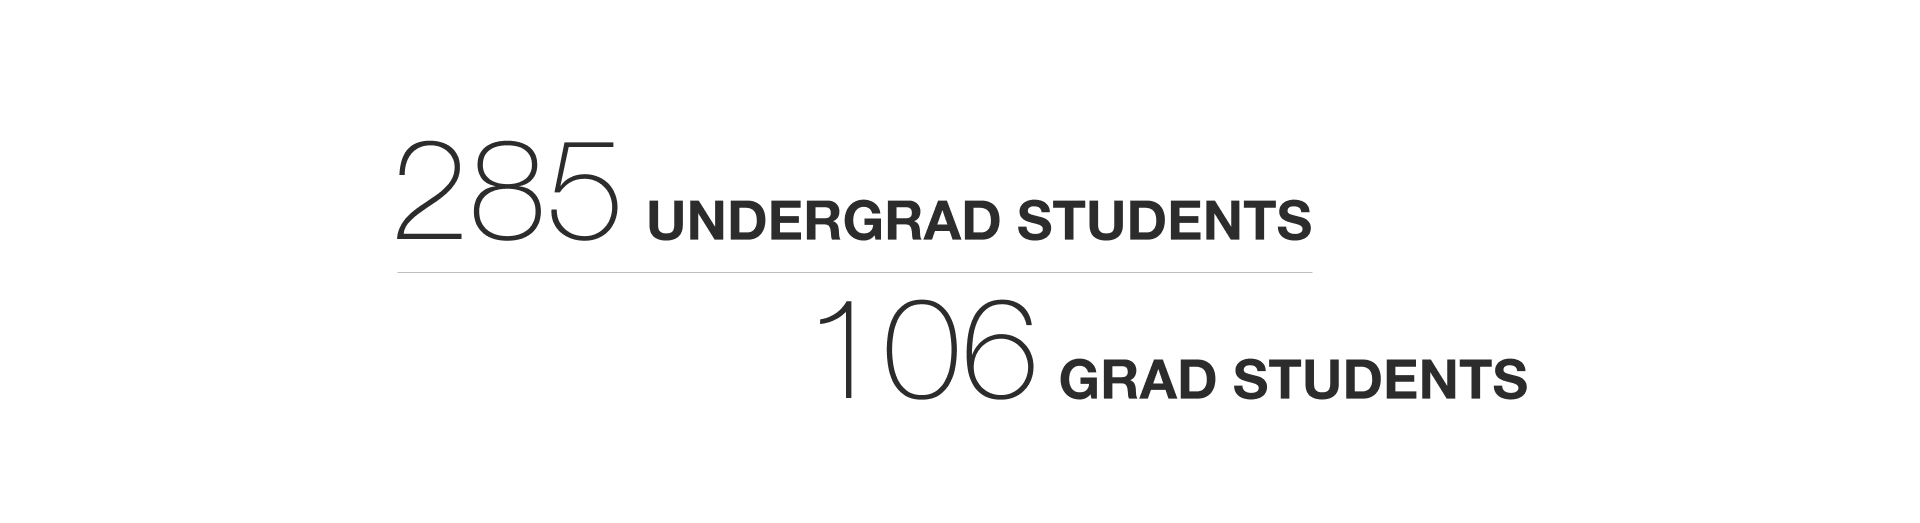 285 undergrad students, 106 grad students